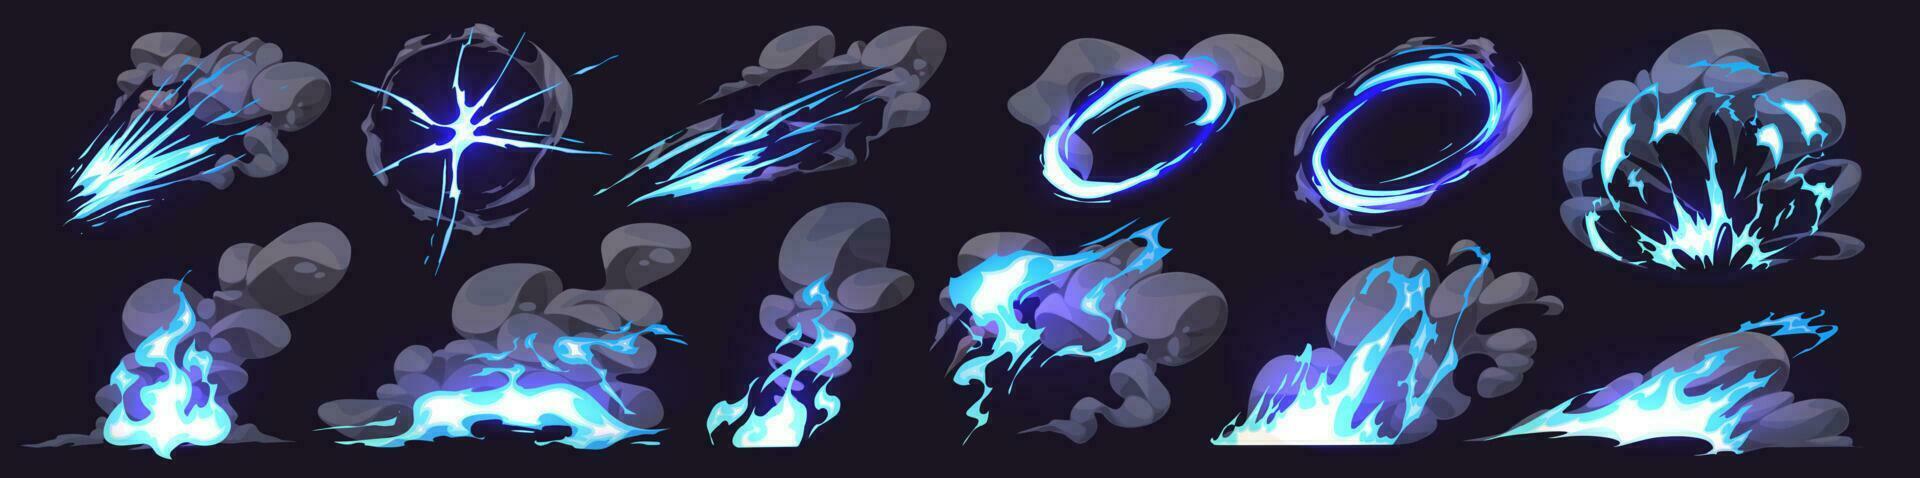 Karikatur einstellen von Rauch Wolken, Neon- Blau Blitz vektor